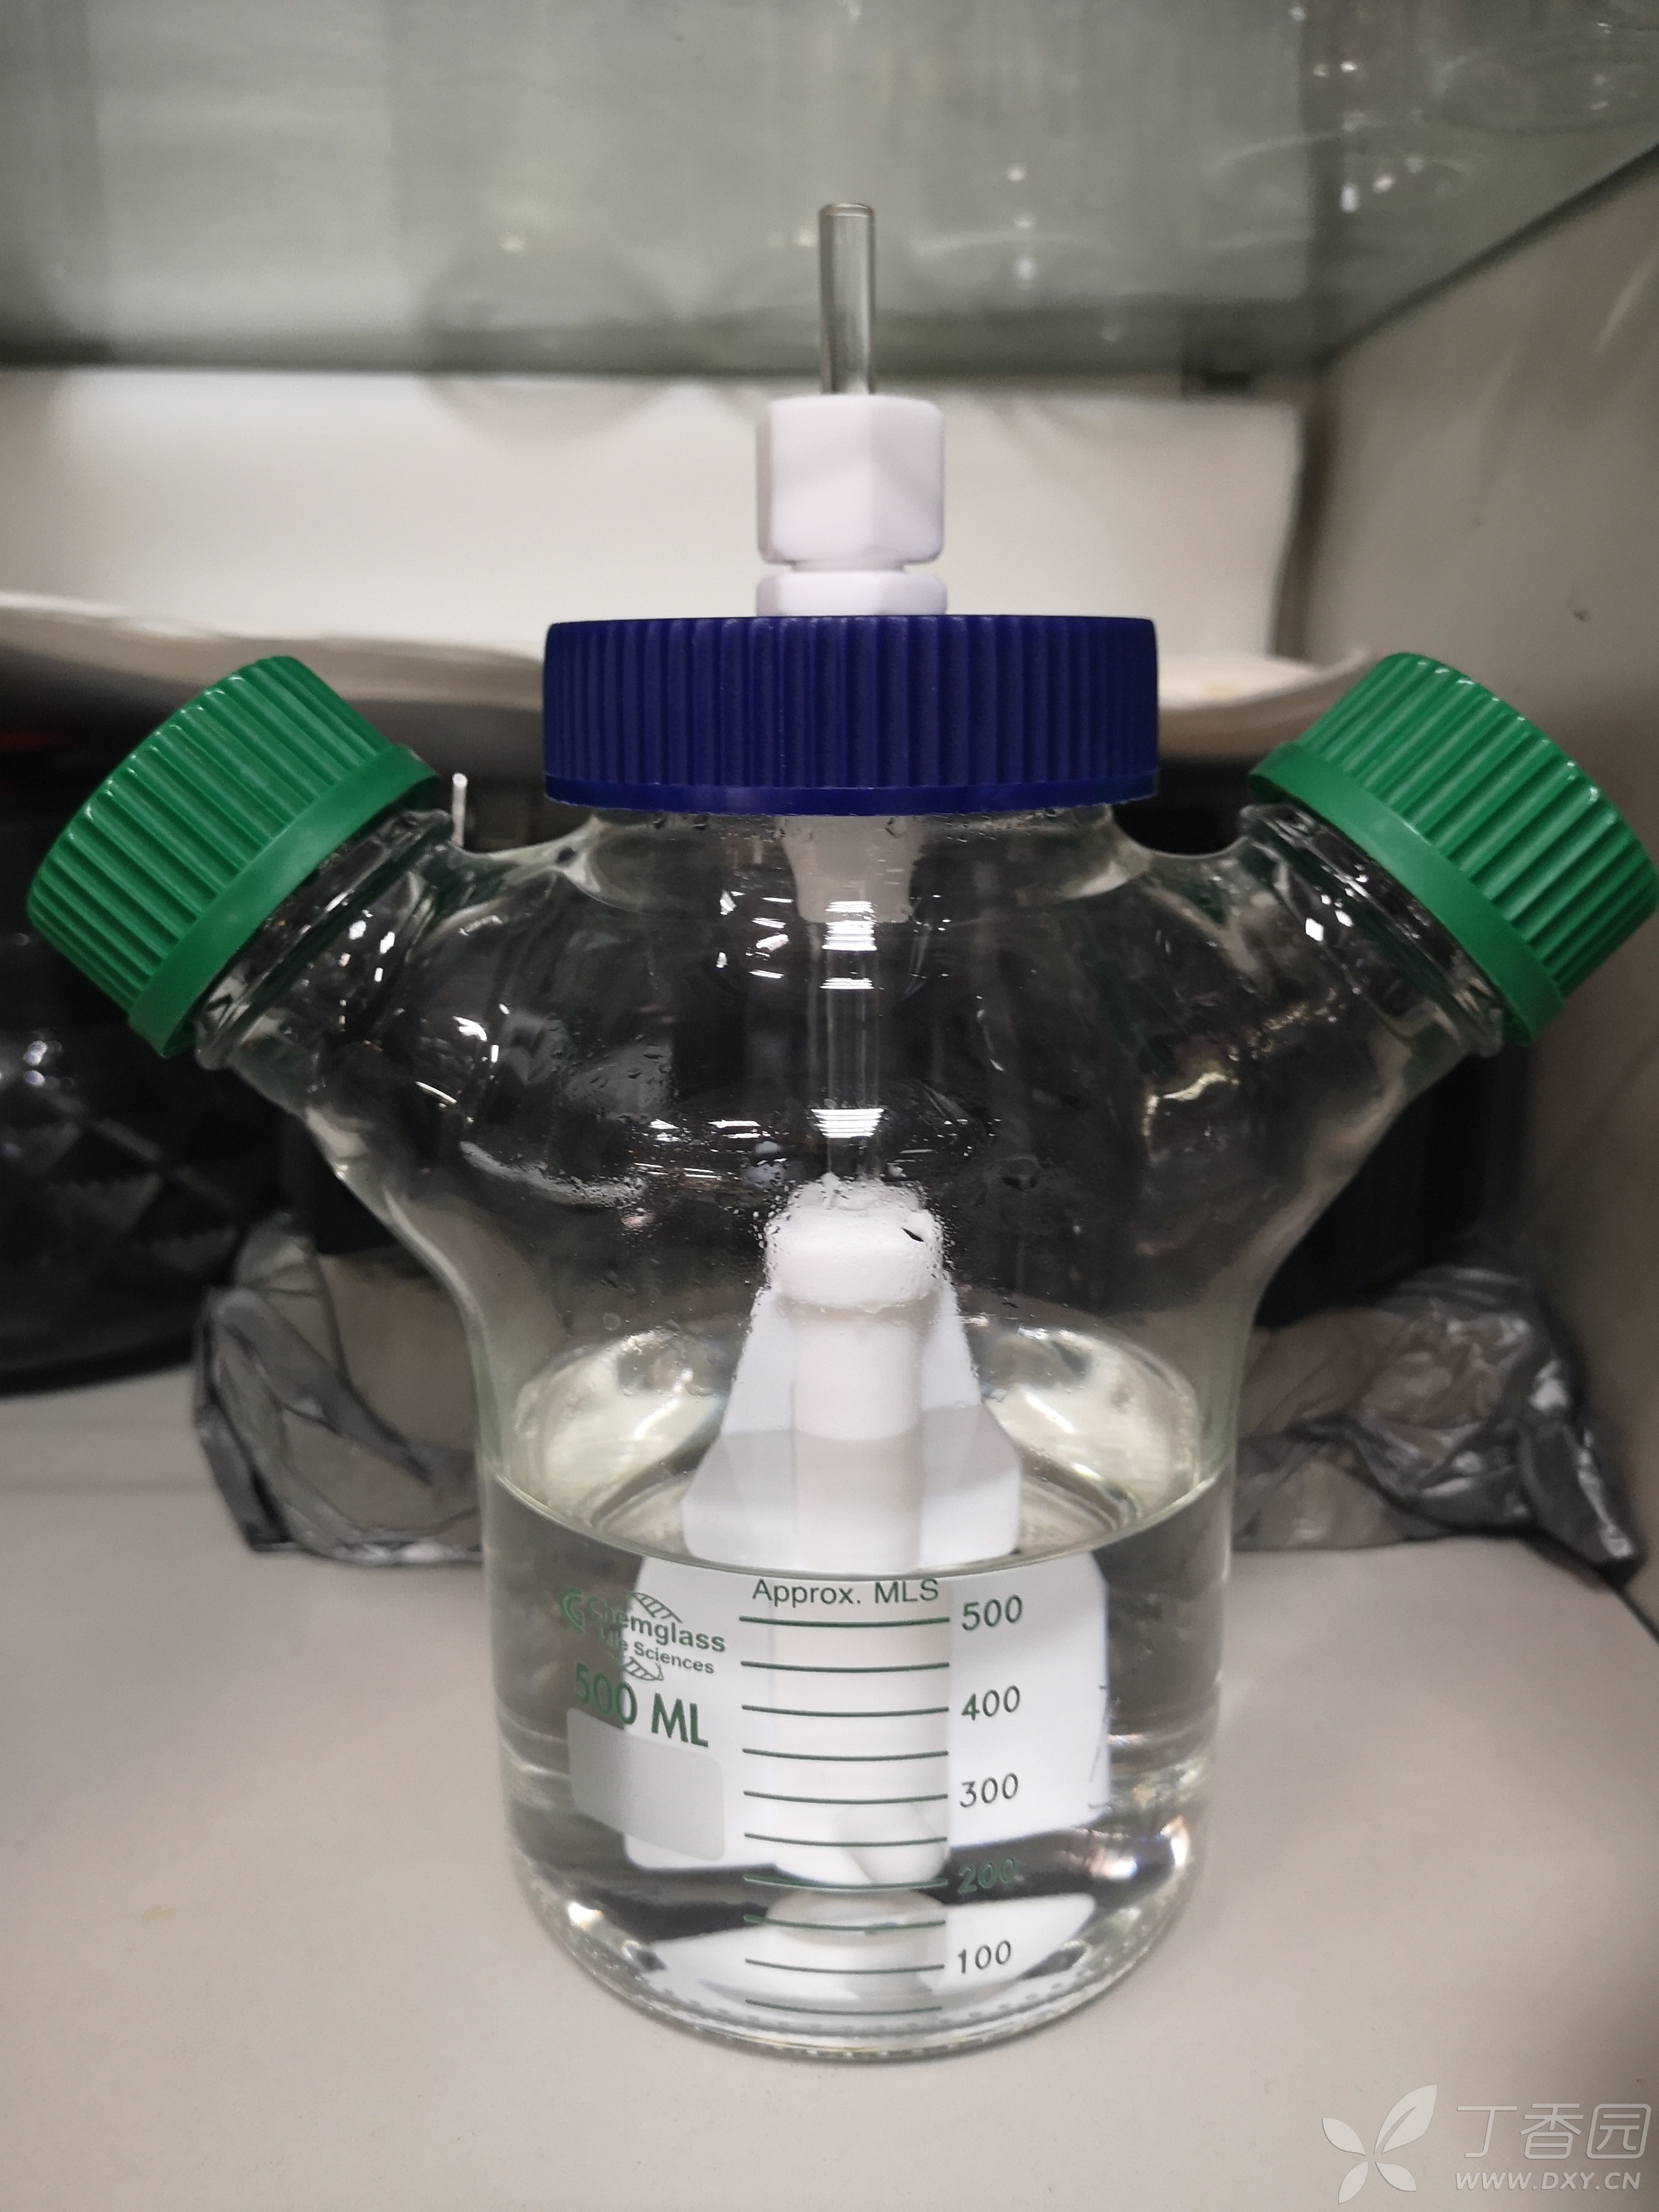 磁力搅拌器培养瓶——培养悬浮细胞(293f)的转速有推荐的吗?